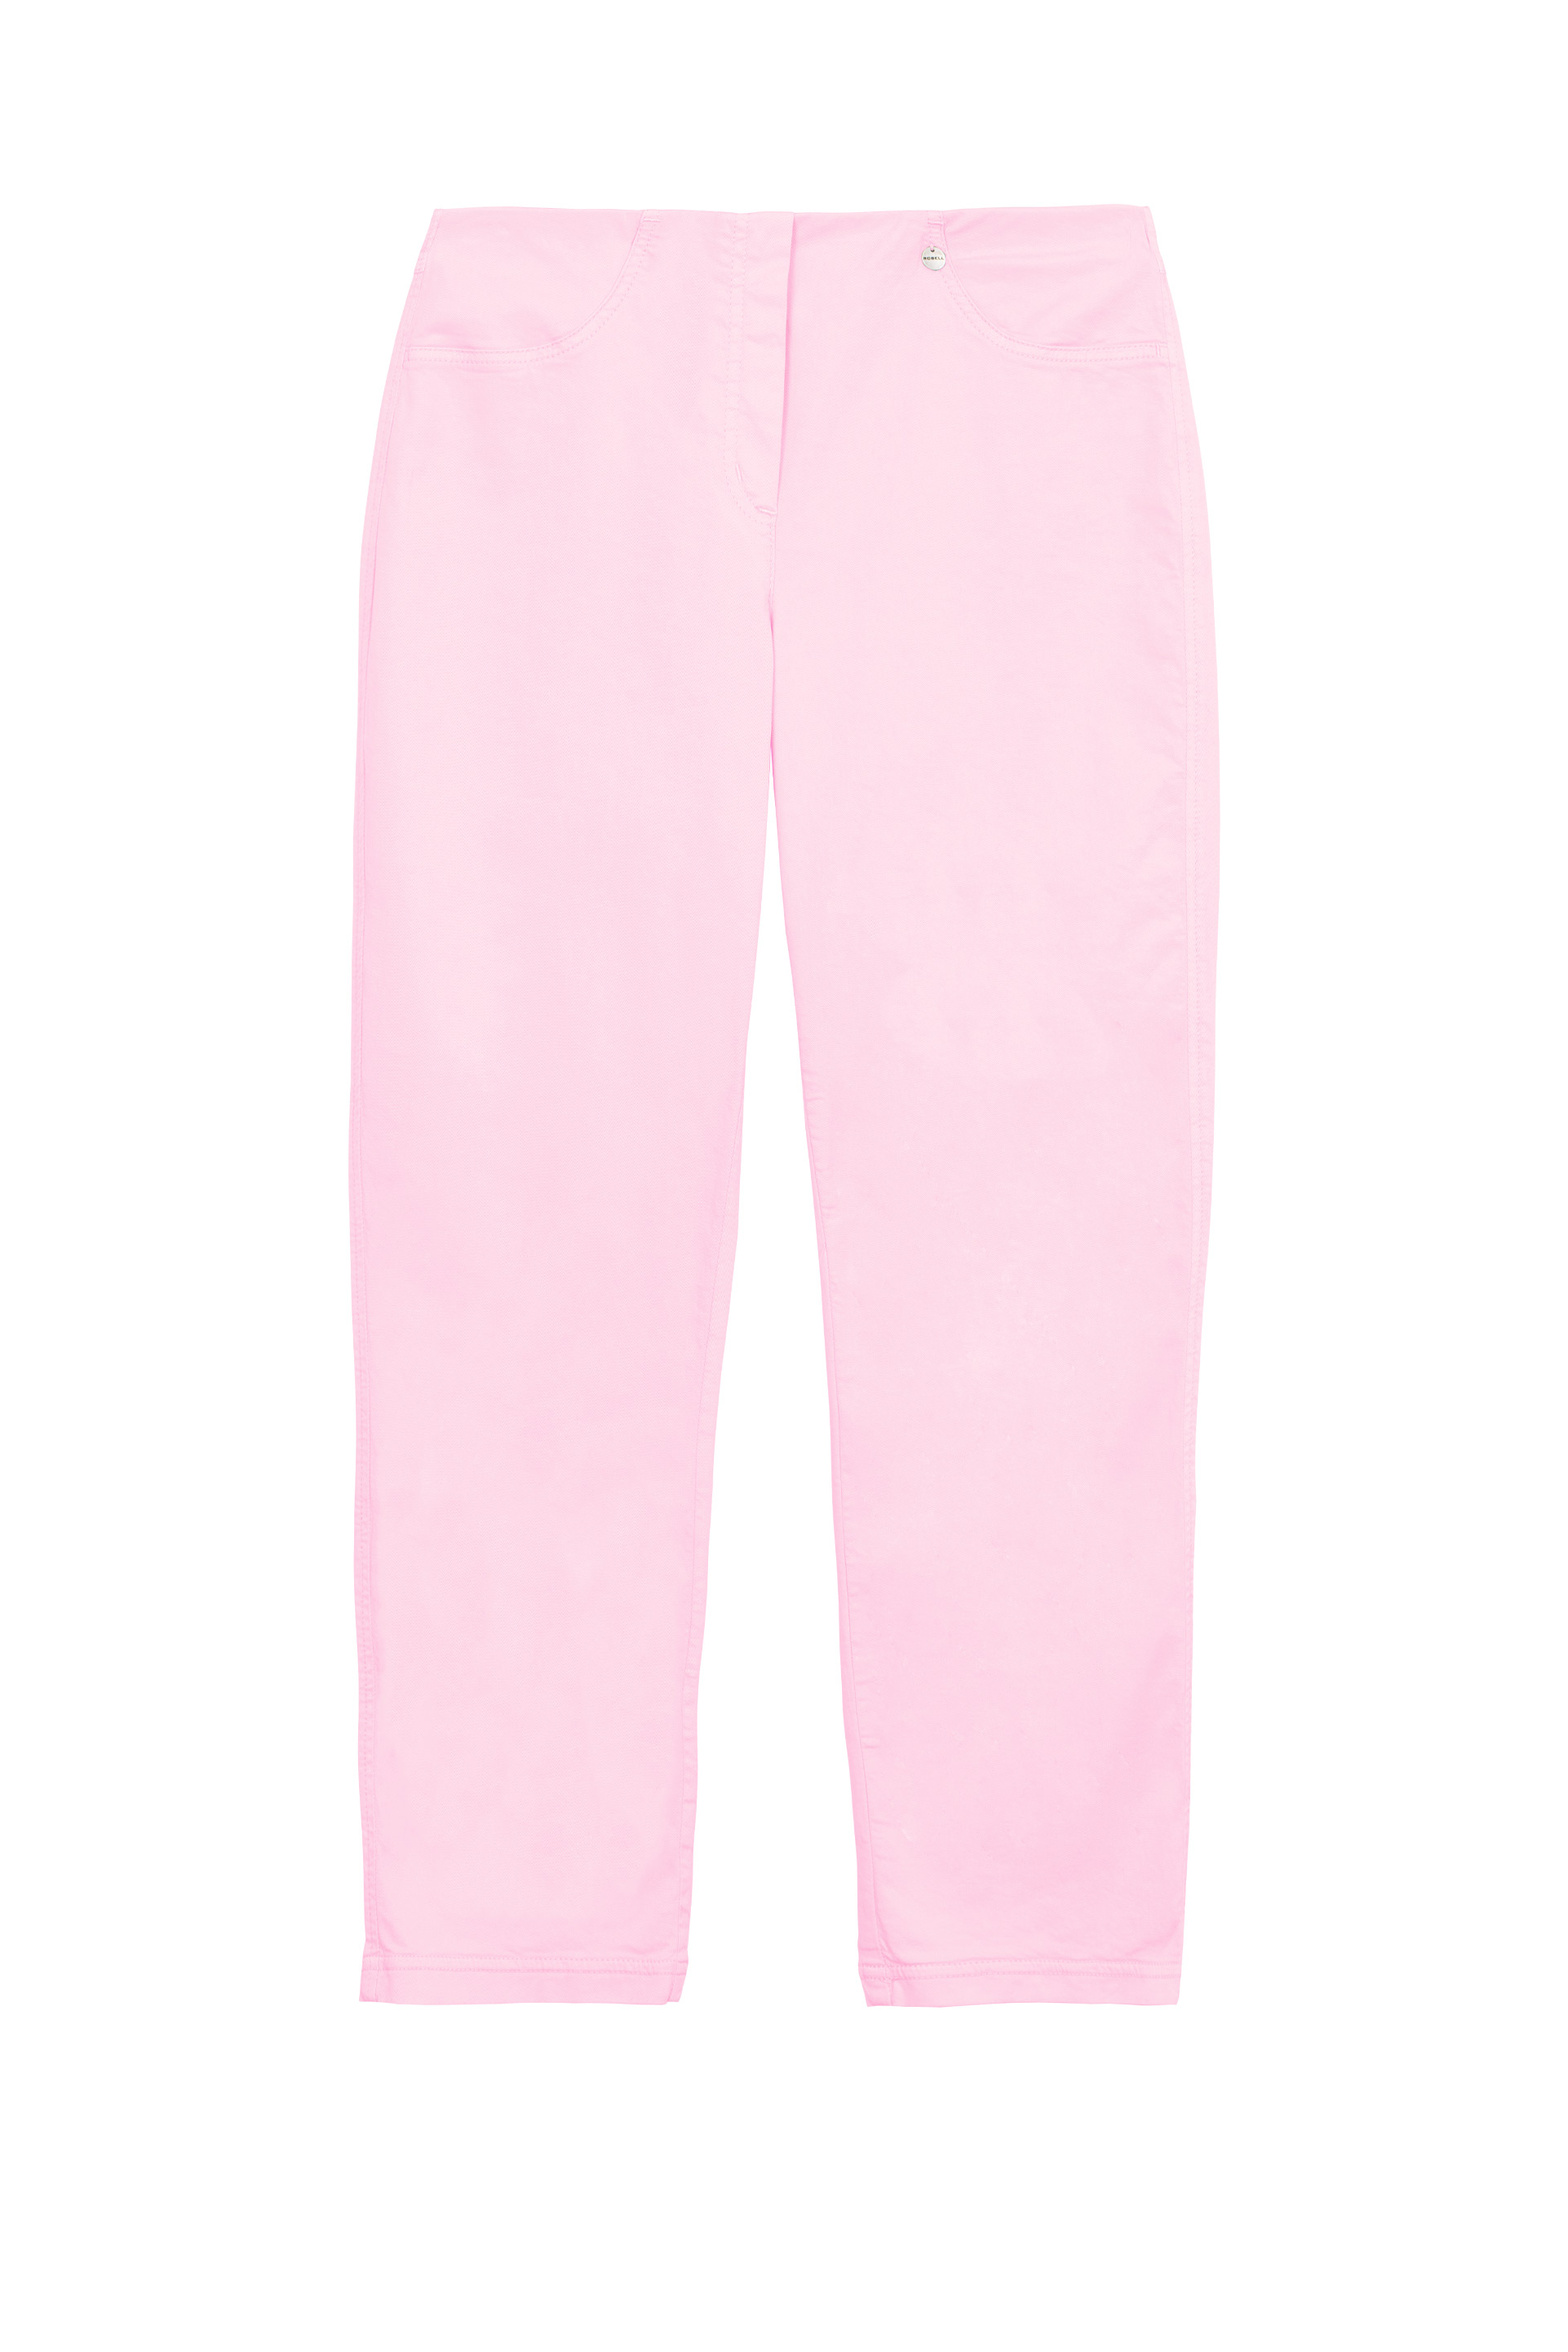 68607_cotton_bella_trousers_powder_pink.jpg